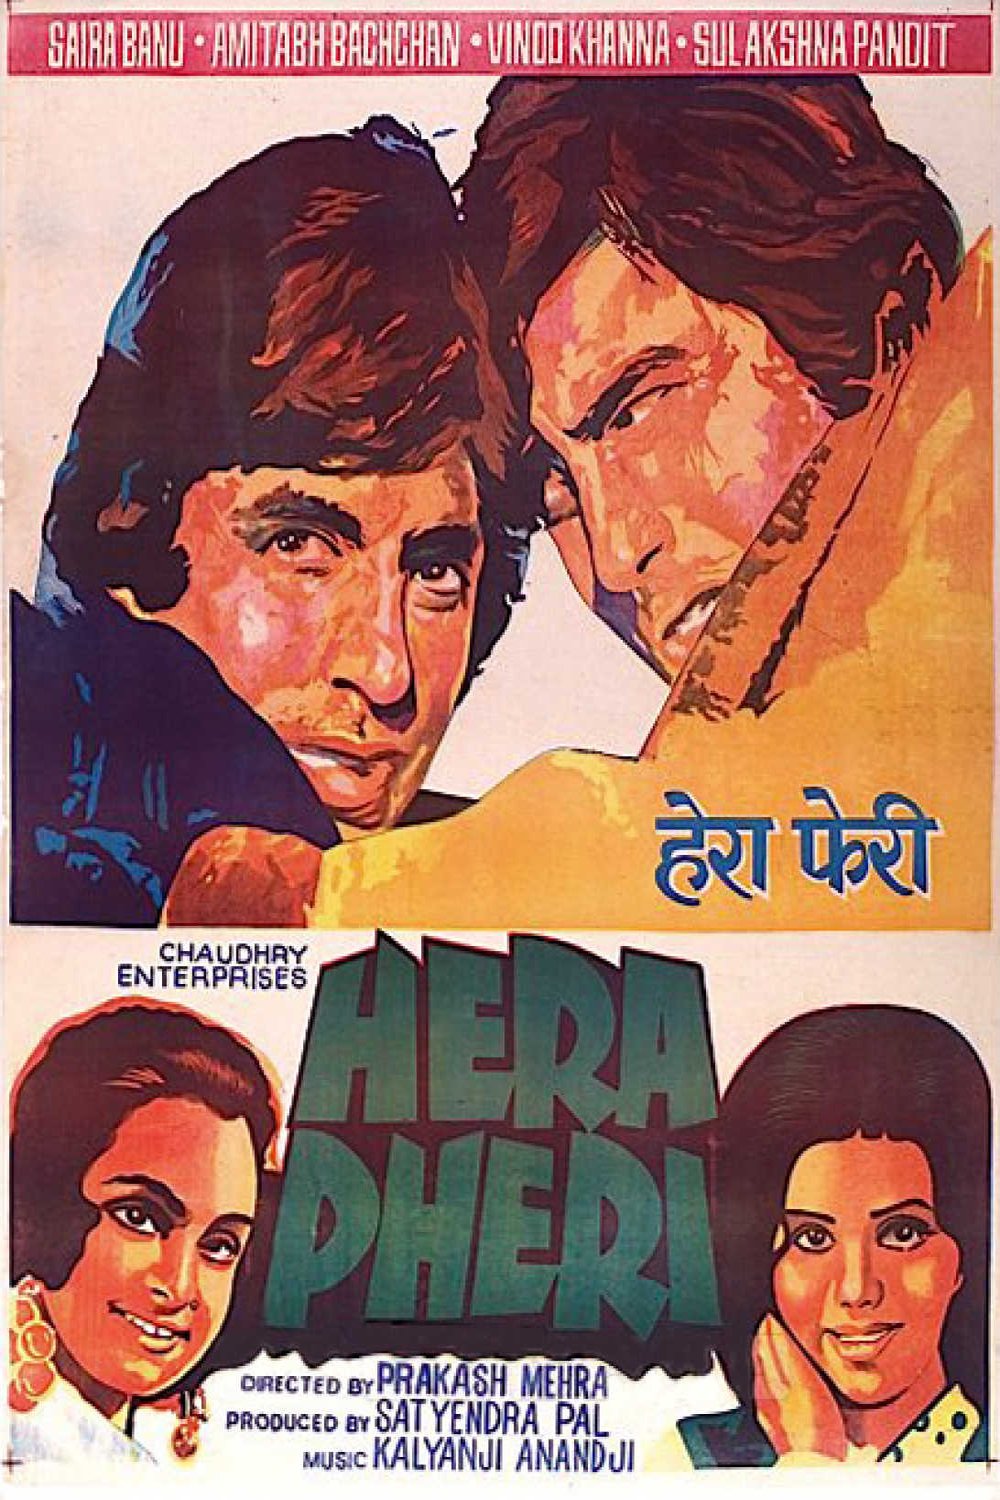 Hindi poster of the movie Hera Pheri